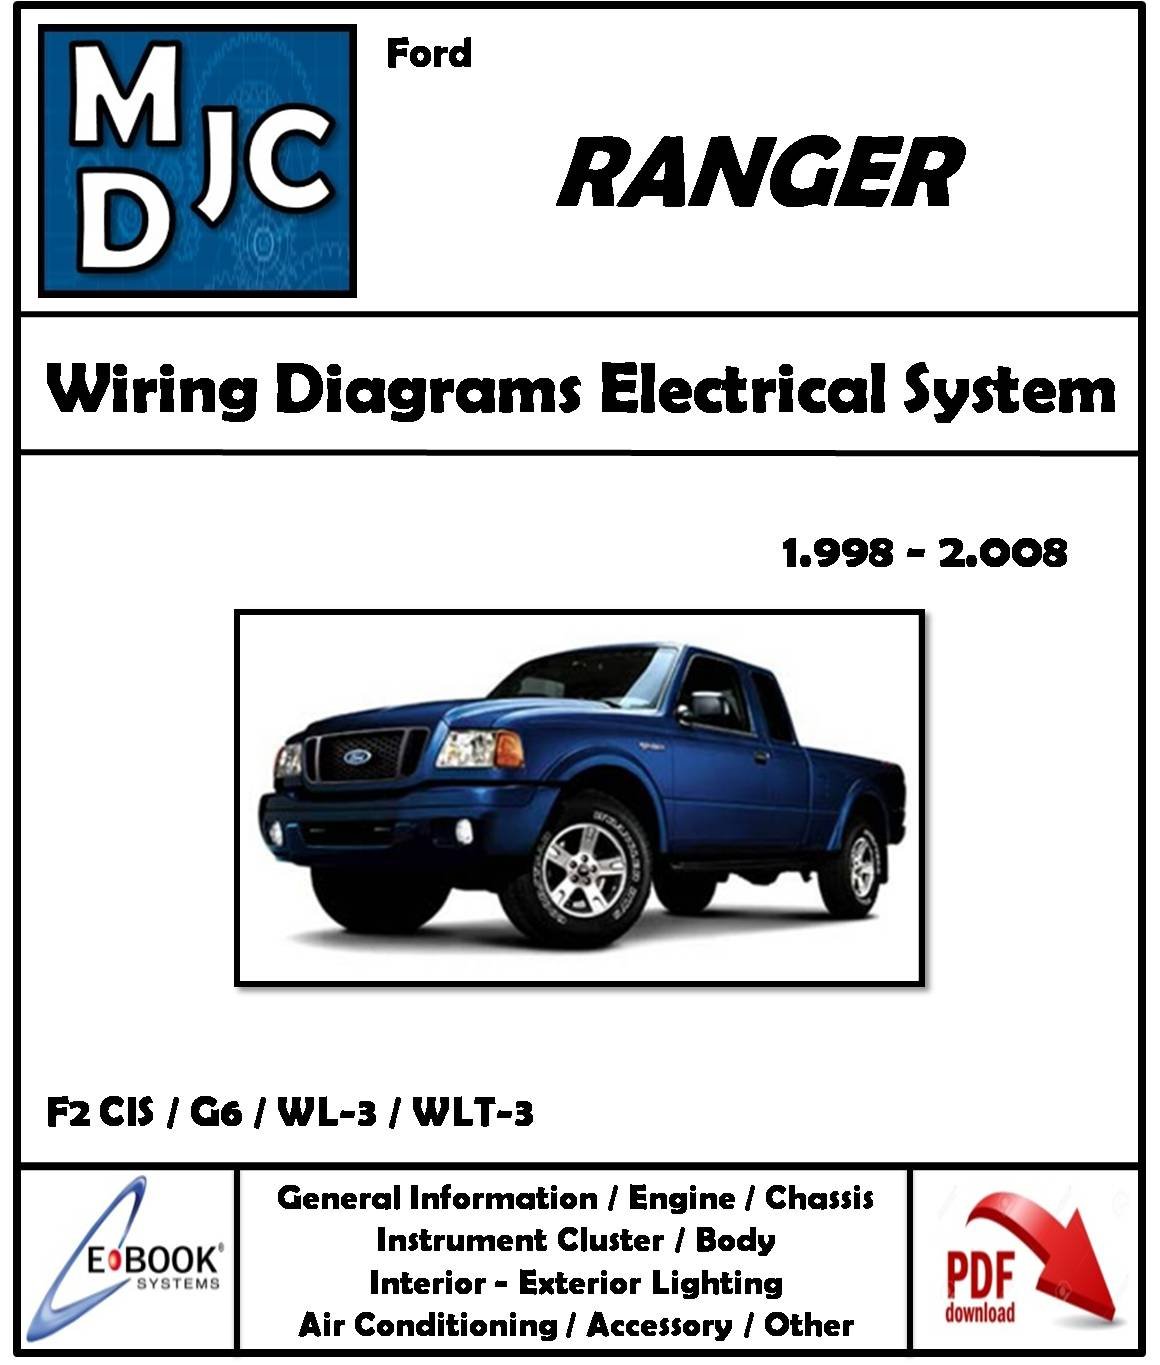 Ford Ranger 1998 - 2008